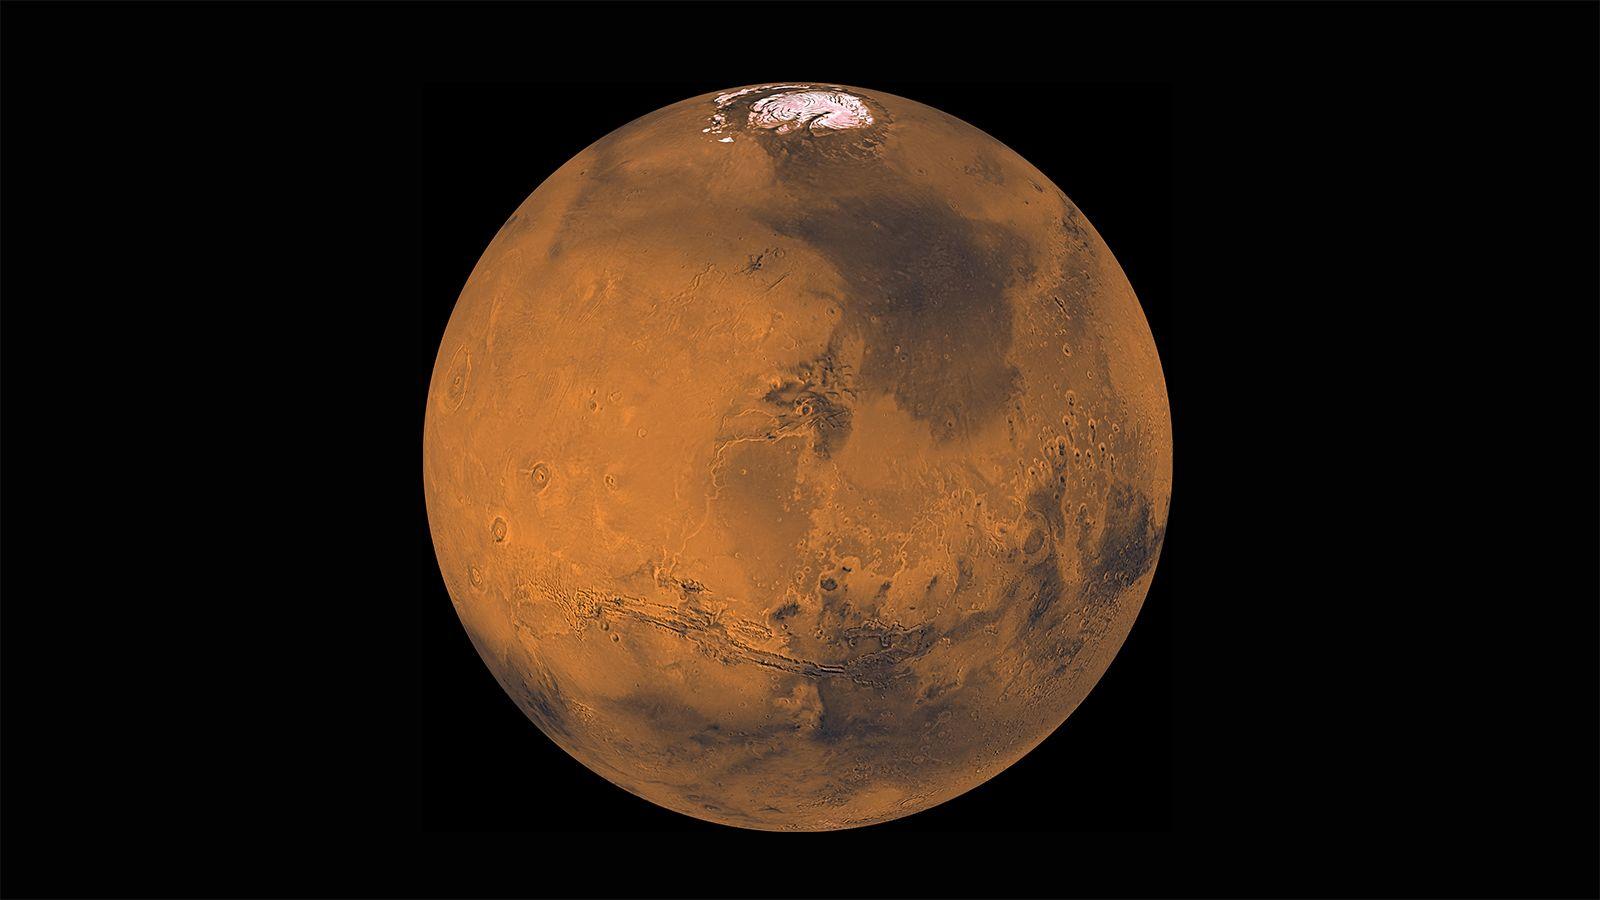 NASA Mars Logo - News. Mars Surveyor 2001 Seeks Eye Catching Logo Design